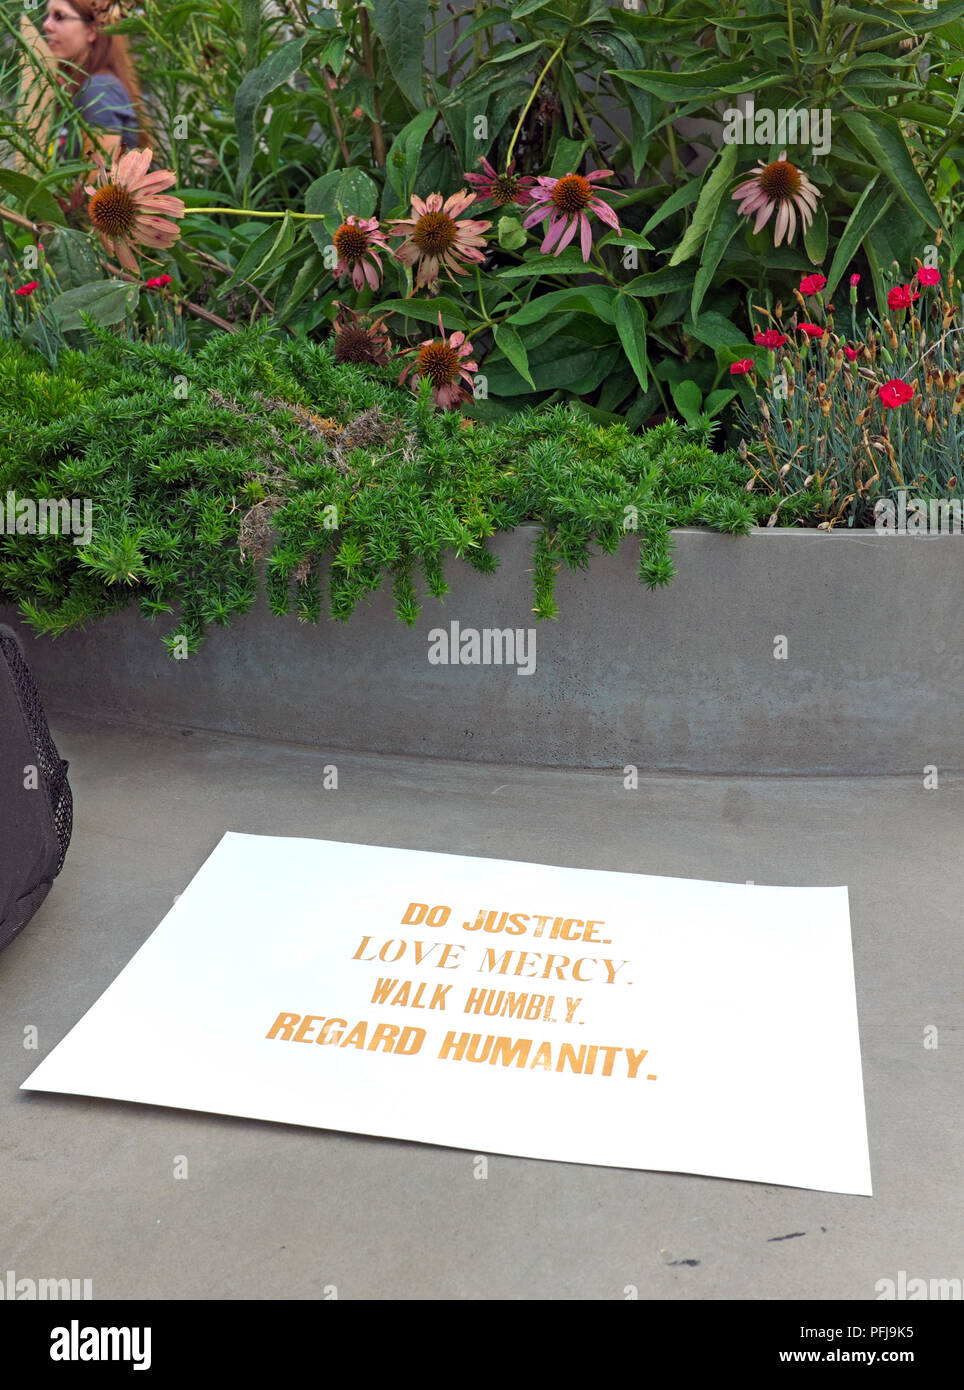 Ein Schild an einem öffentlichen Sitzbereich in Freedom Park in Washington, DC, - Tun der Gerechtigkeit, der Liebe, der Barmherzigkeit, der demütig wandeln und auf die Menschheit. Stockfoto